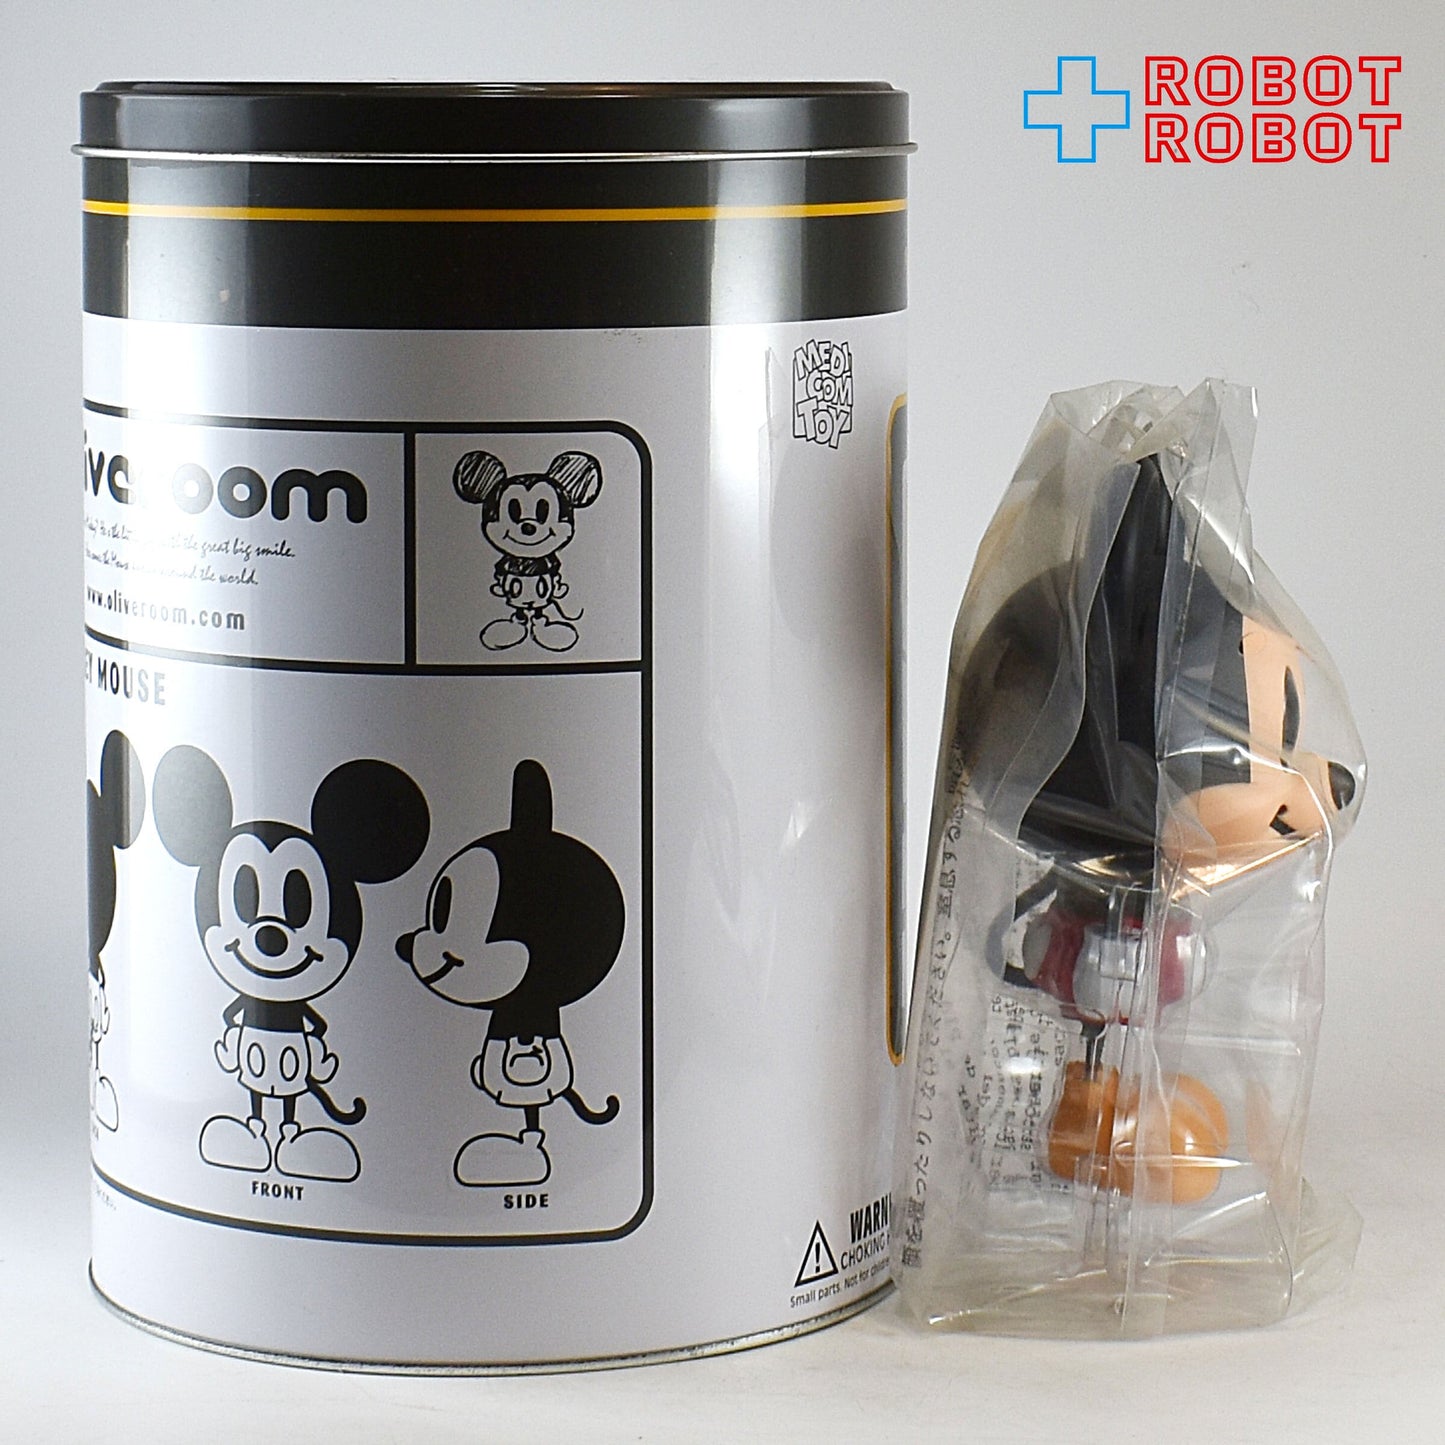 メディコム デビルロボッツ オリーブルーム VCD ディズニー ミッキーマウス フィギュア セット 缶入